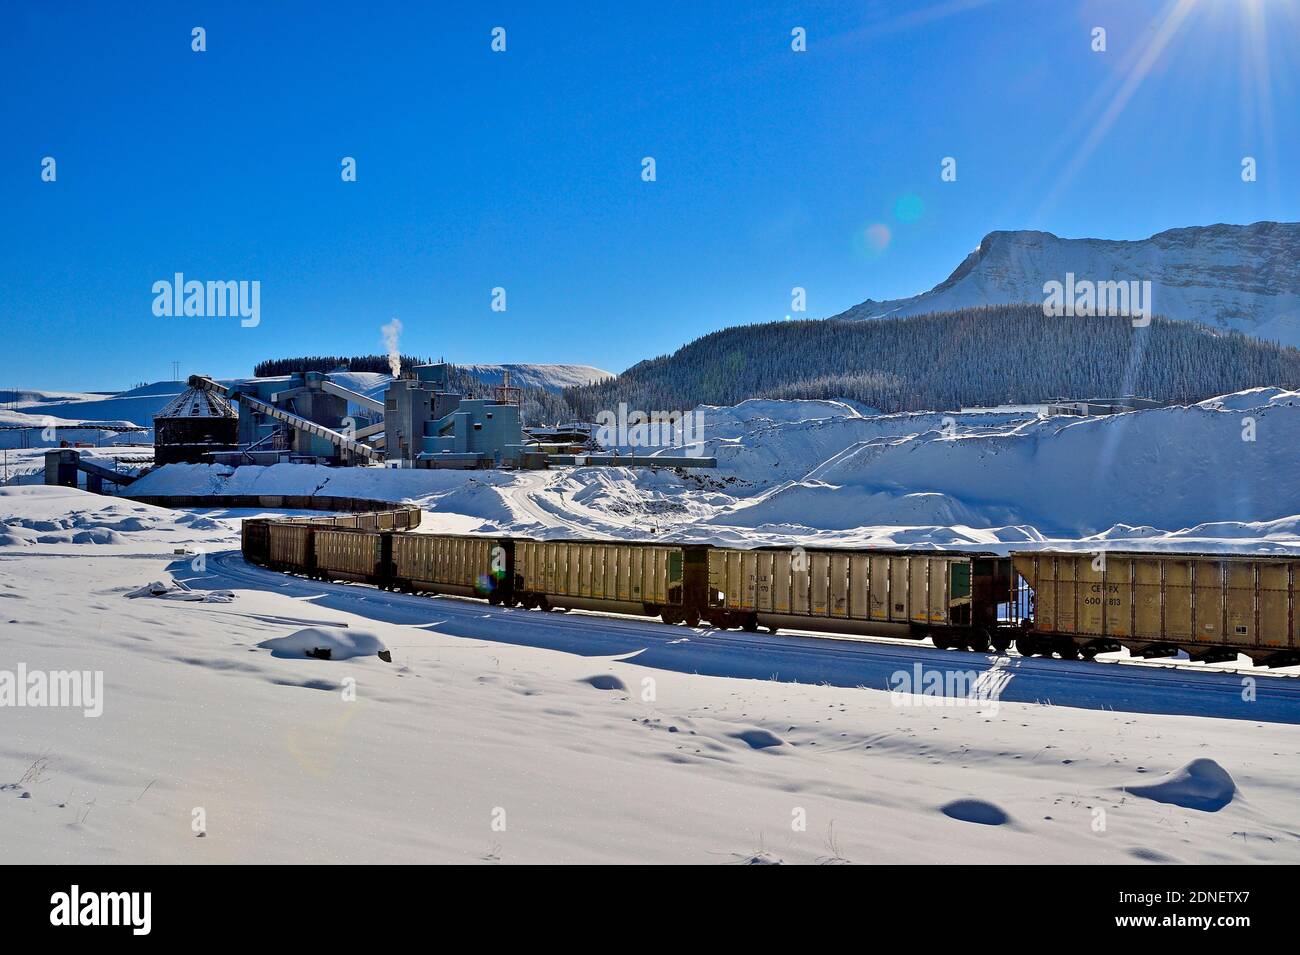 Un paisaje invernal de un ferrocarril nacional canadiense de carga mineral de carbón de una planta de procesamiento de carbón en las estribaciones de las montañas rocosas Foto de stock